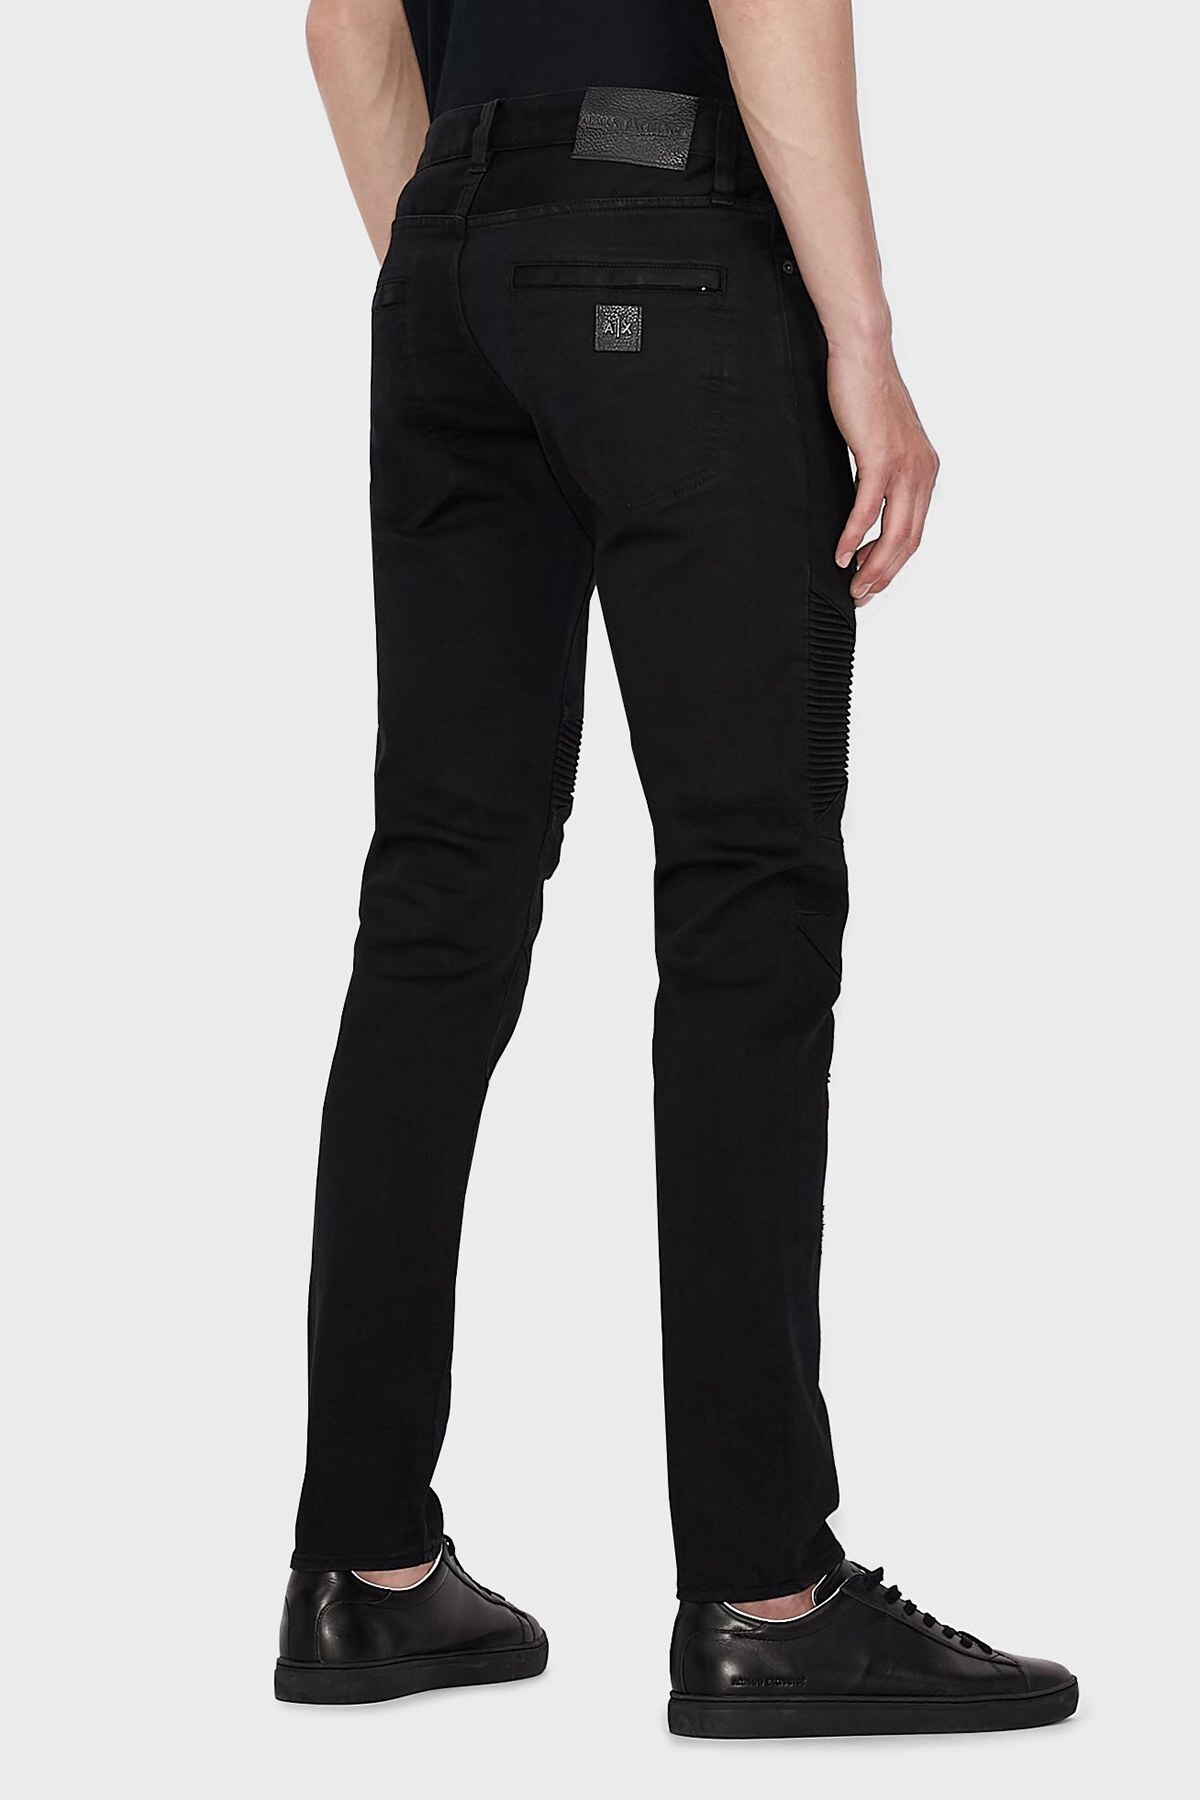 Armani Exchange Pamuklu Skinny Fit J27 Jeans Erkek Kot Pantolon 6KZJ27 Z1AAZ 1200 SİYAH